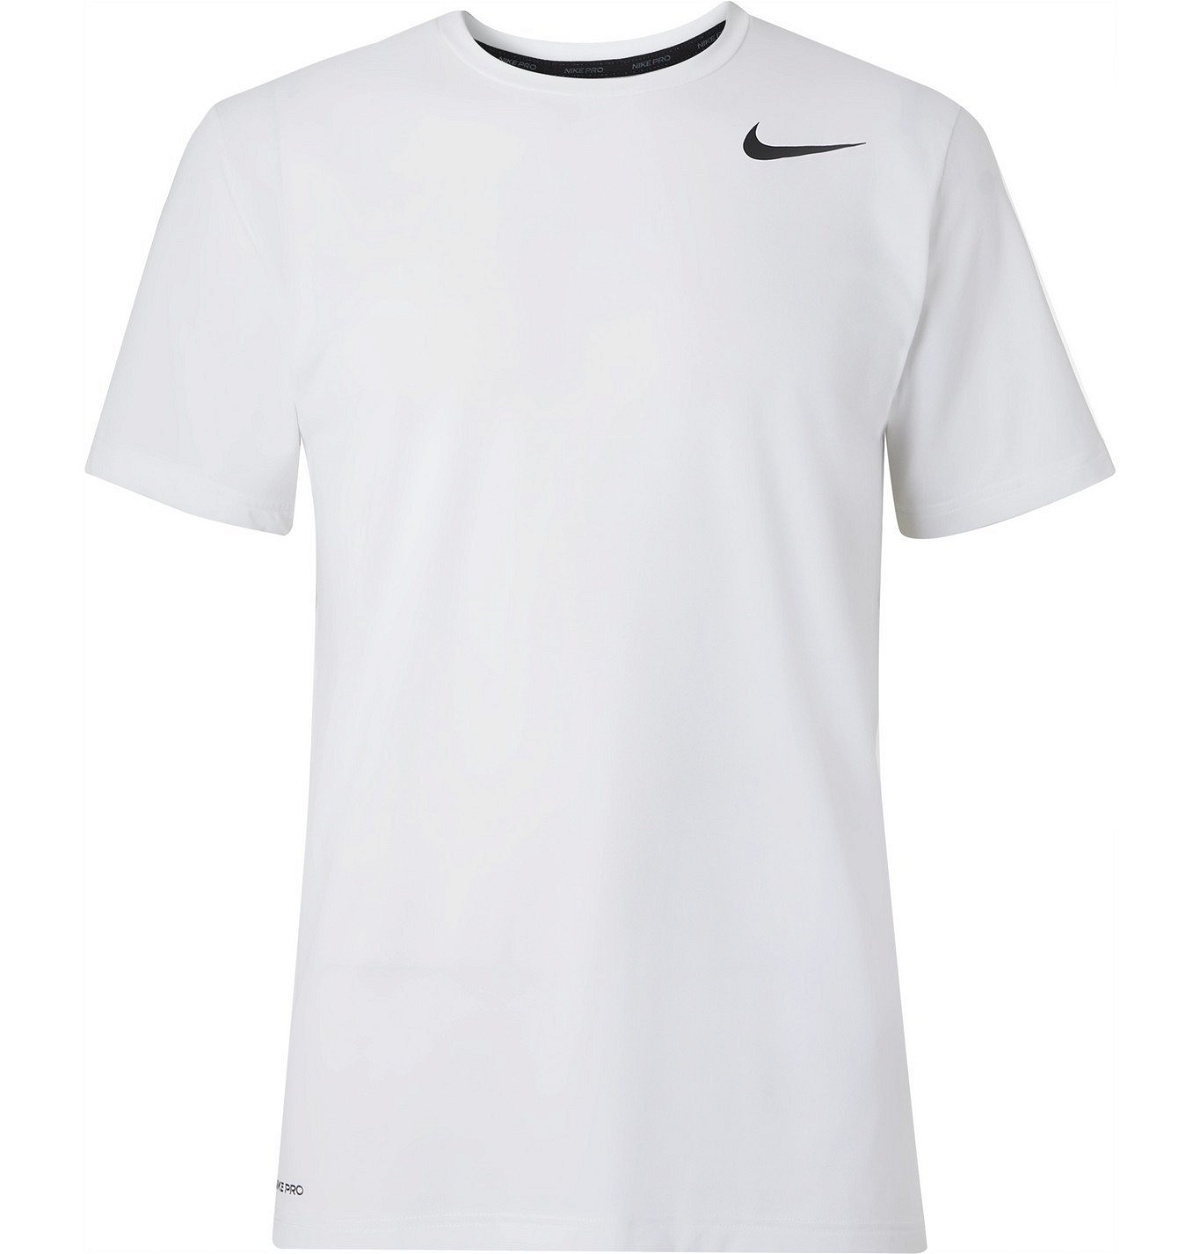 Nike Training - Pro Dri-FIT White Nike